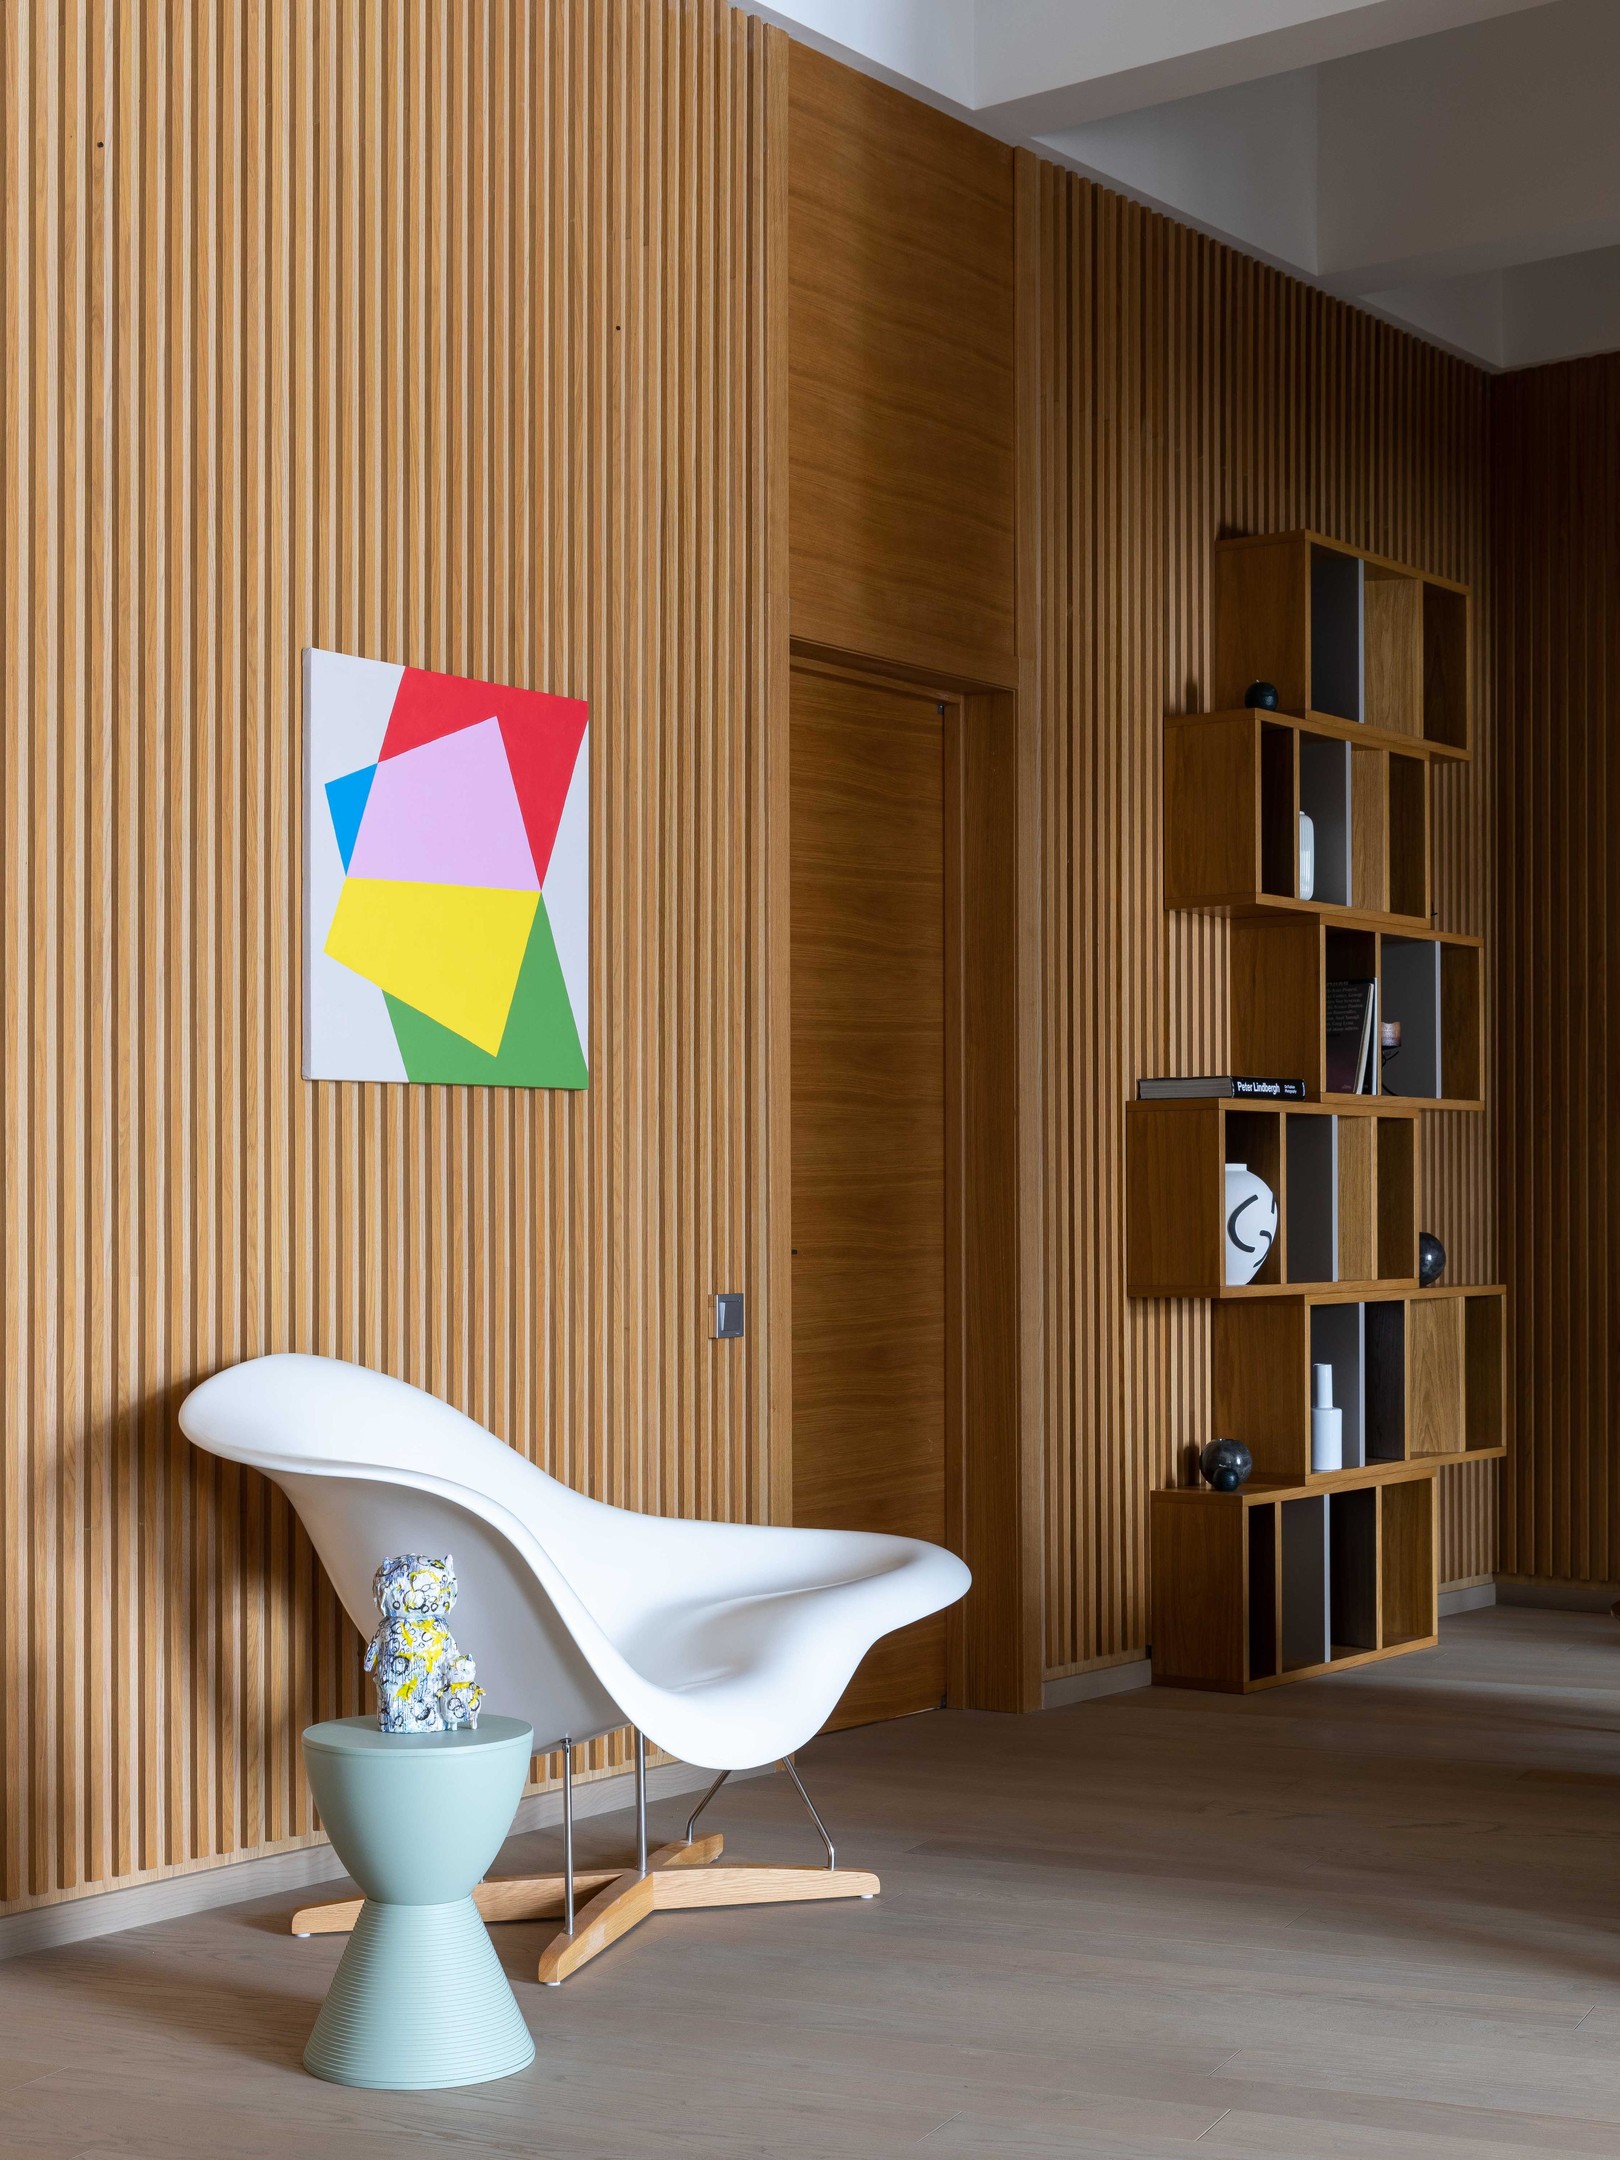 Vì không thay đổi cấu trúc ban đầu nên nội thất được đầu tư rất kỹ lưỡng. Chiếc ghế bành La Chaise màu trắng ở lối vào căn hộ, chiếc giá đỡ theo đơn đặt hàng, Tranh treo tường của Yana Mikheeva và tác phẩm điêu khắc của nghệ sĩ Vaya Zvereva.